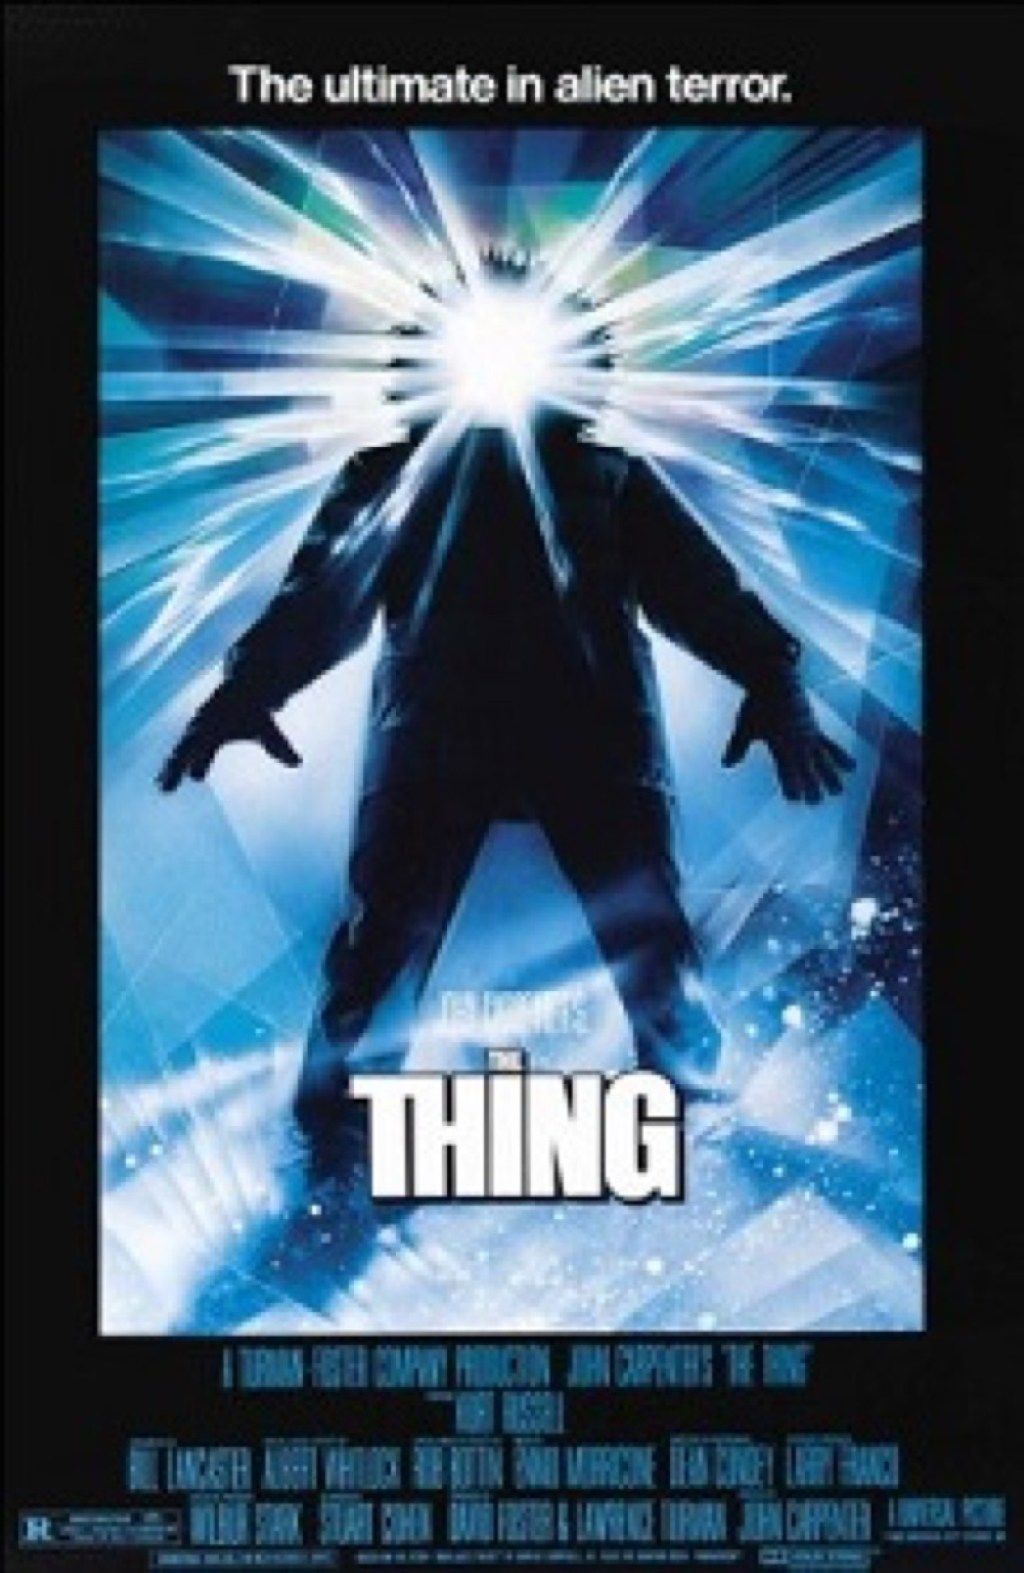 Finais alternativos felizes para o filme The Thing